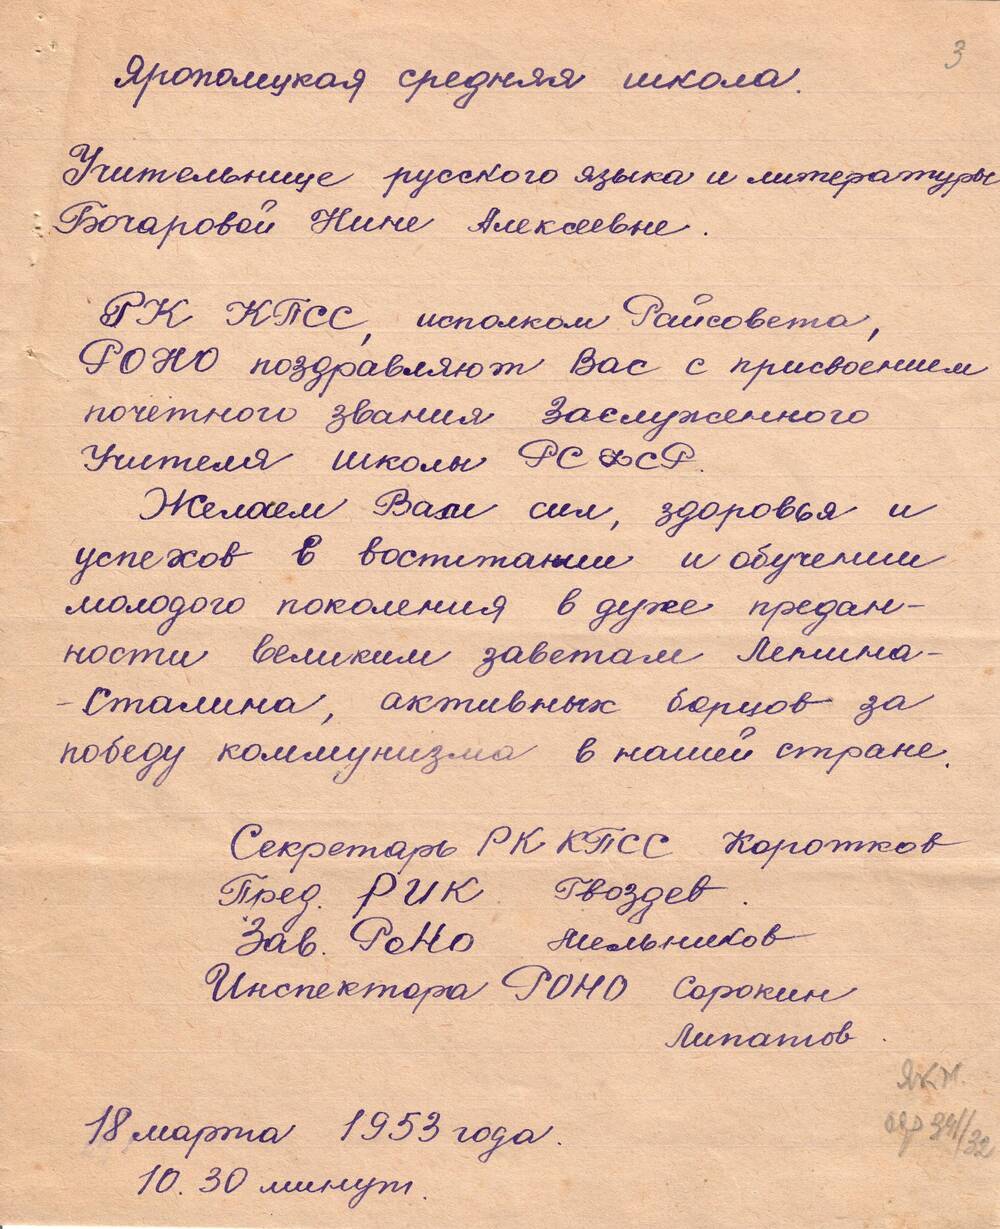 Письмо с поздравлением Бочаровой Н. А. от 18 марта 1953 г. 